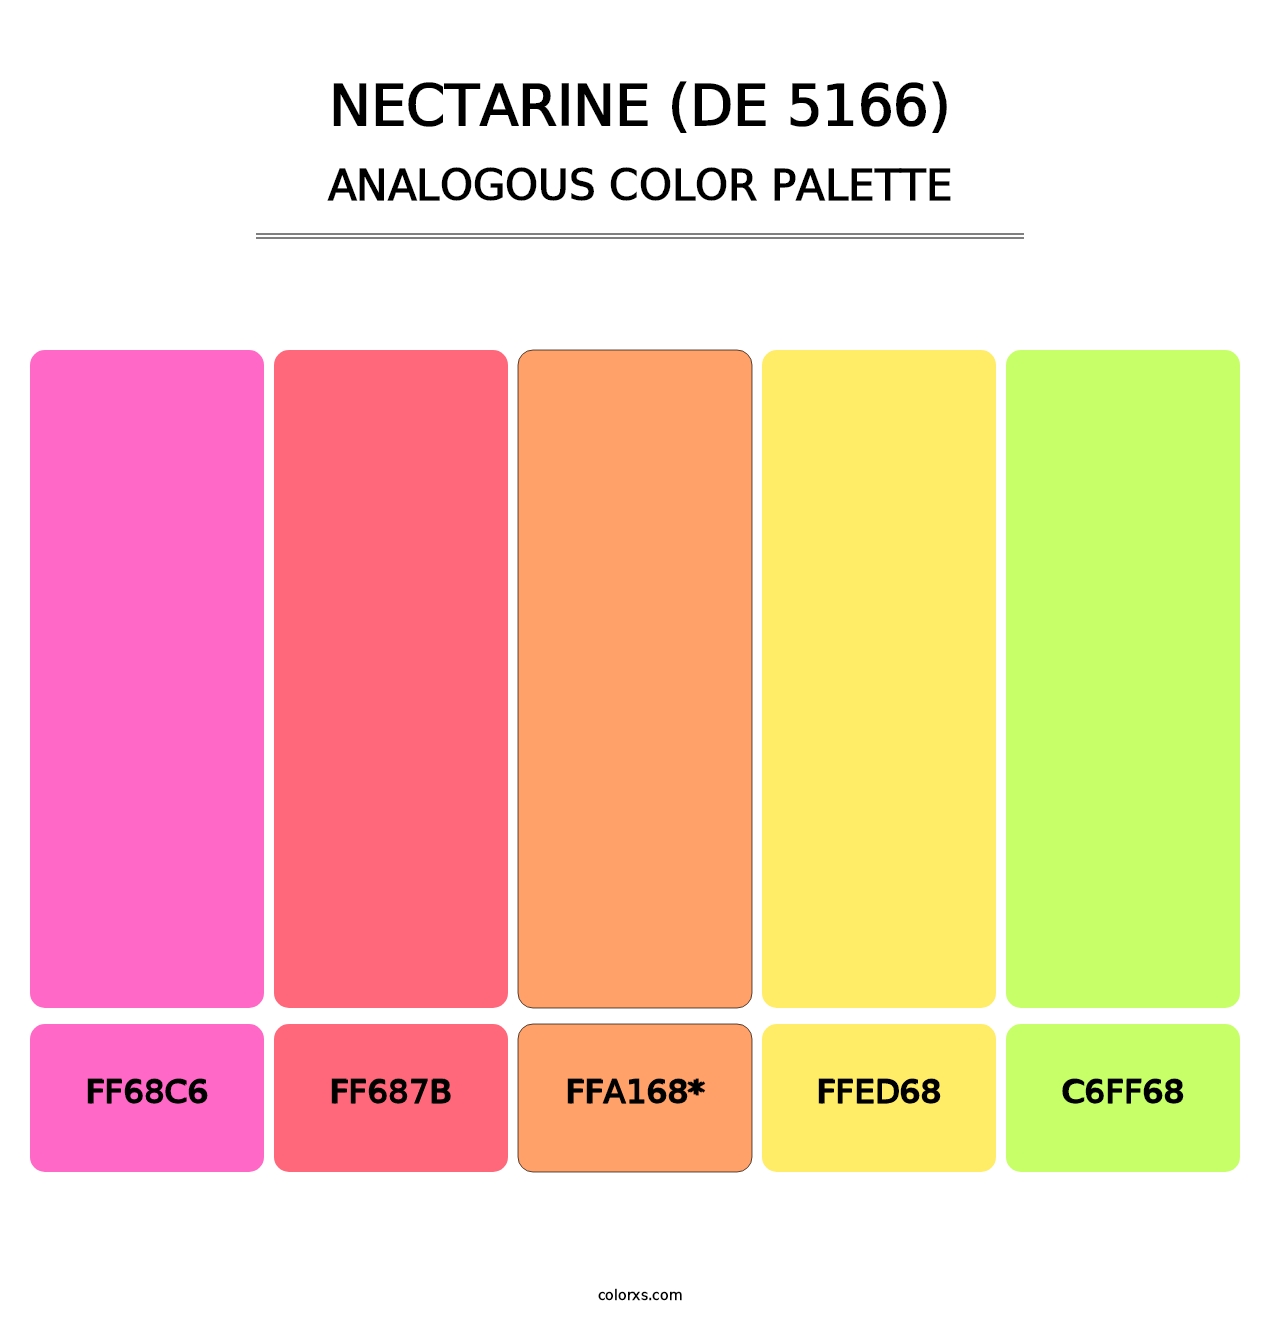 Nectarine (DE 5166) - Analogous Color Palette